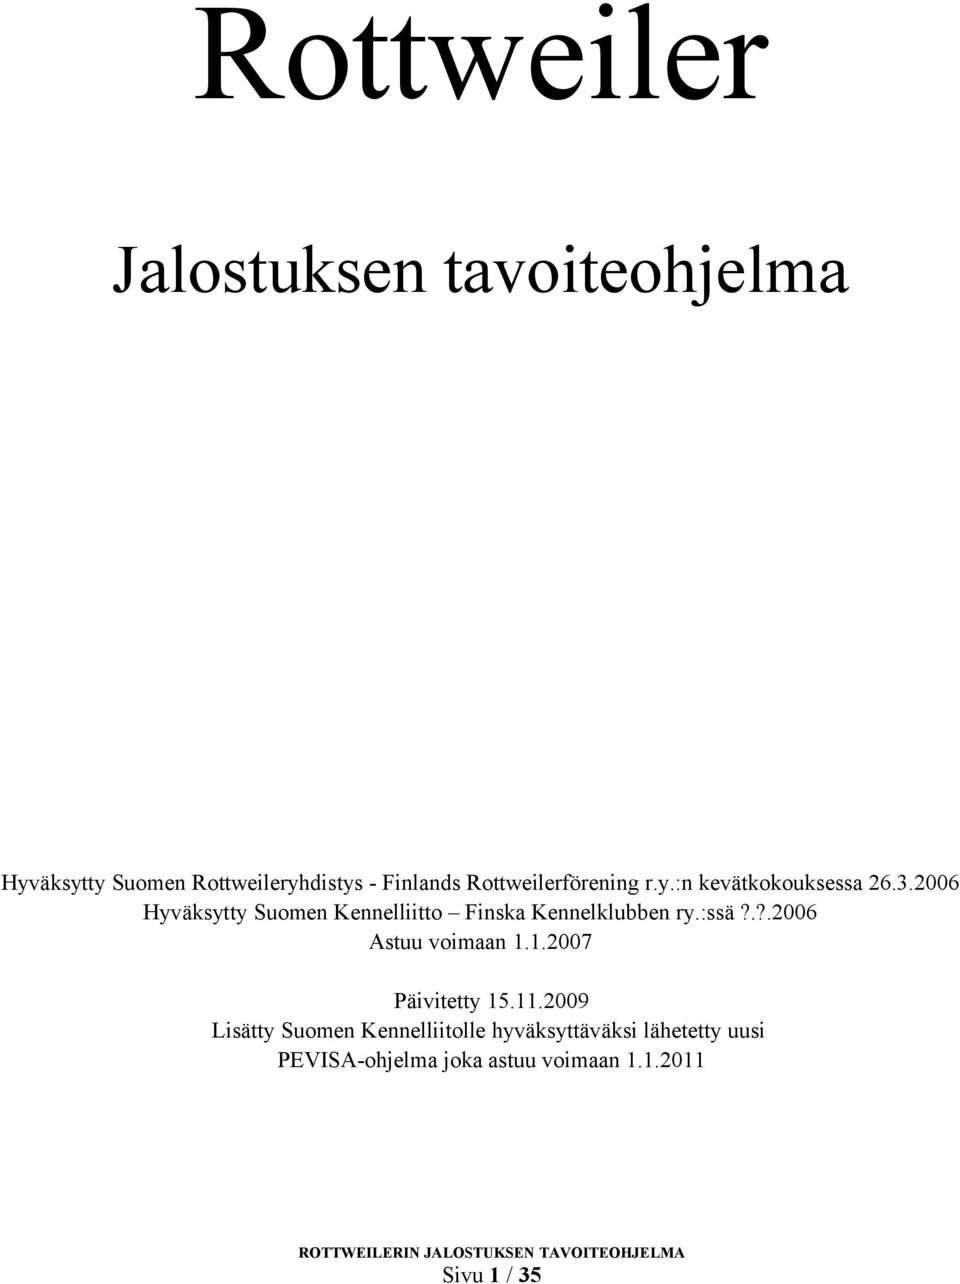 2006 Hyväksytty Suomen Kennelliitto Finska Kennelklubben ry.:ssä?.?.2006 Astuu voimaan 1.